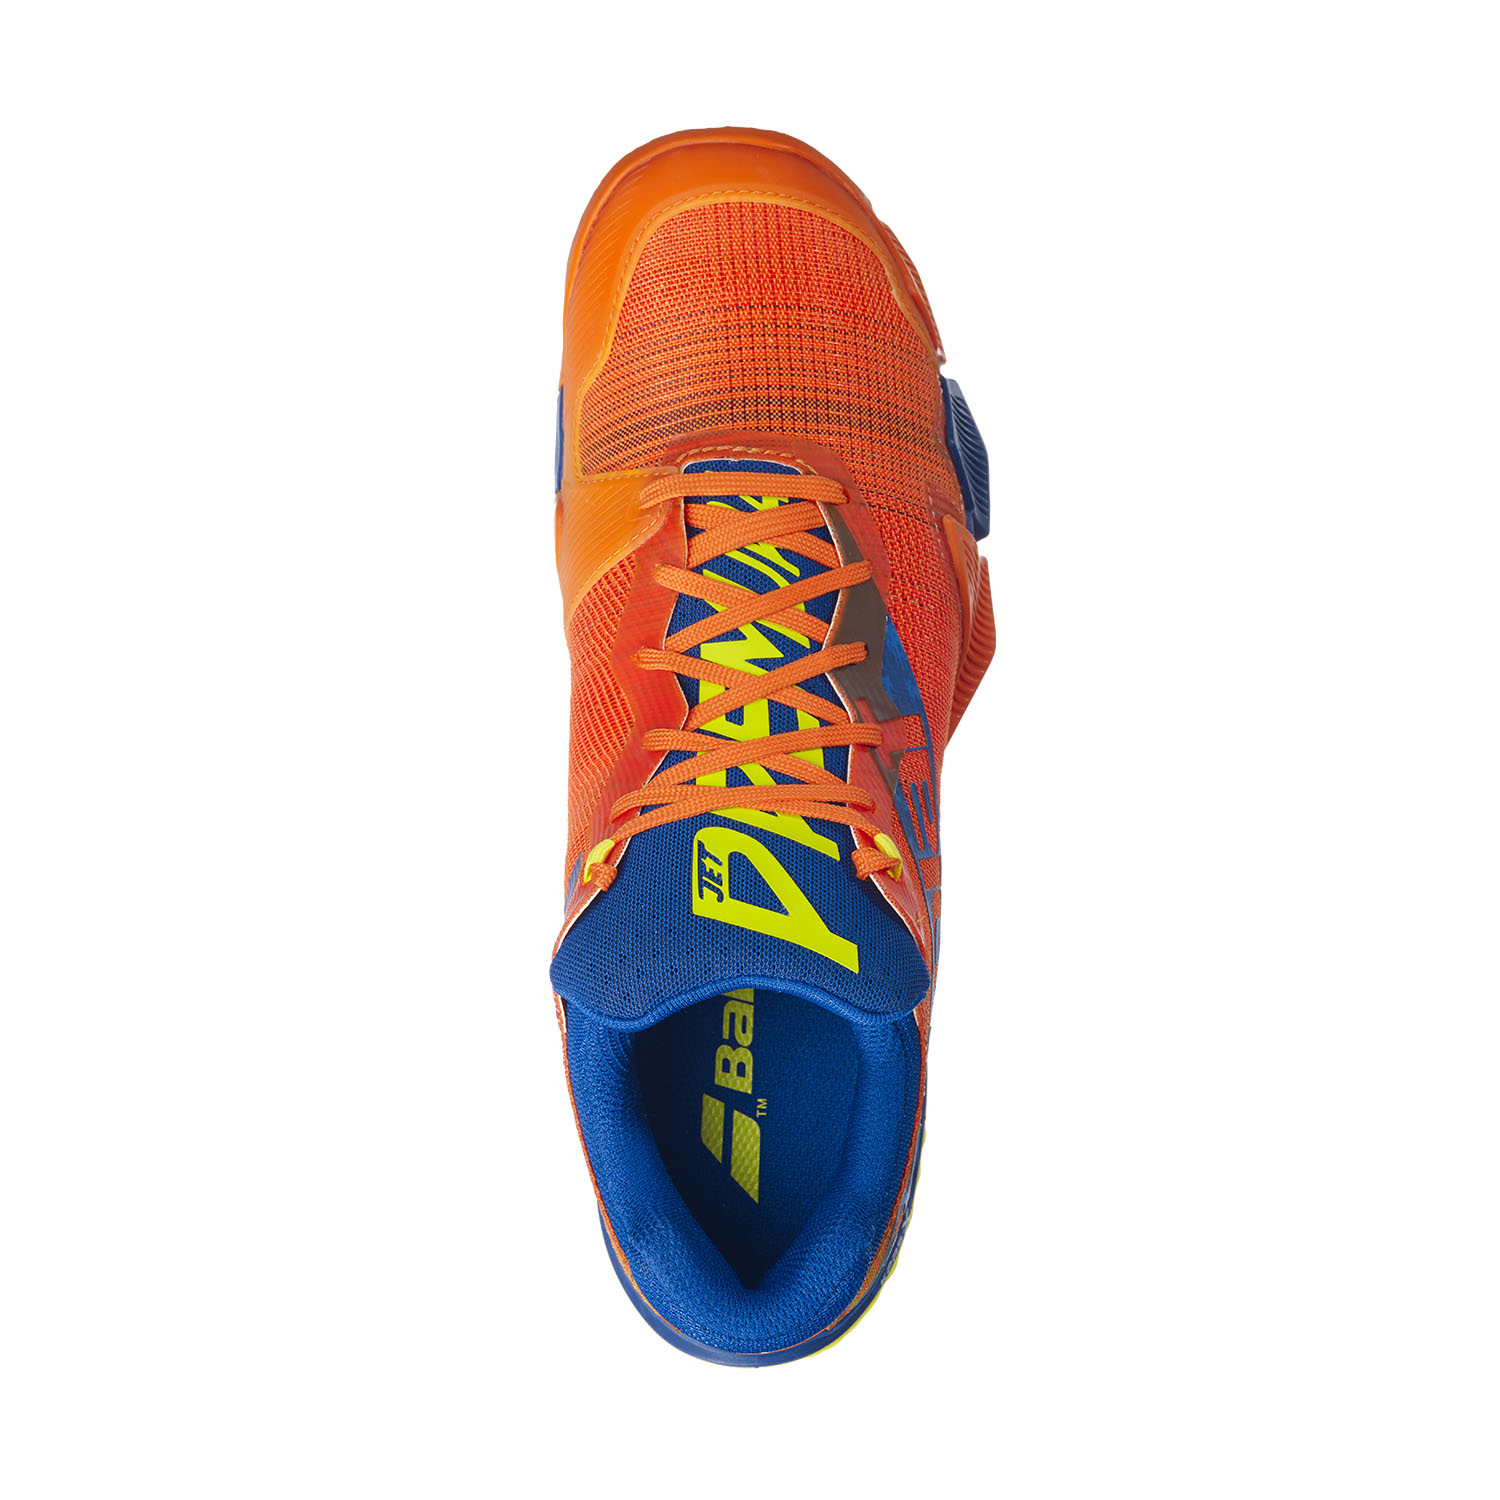 Babolat Jet Premura Padel Shoes - Orange/Dark Blue